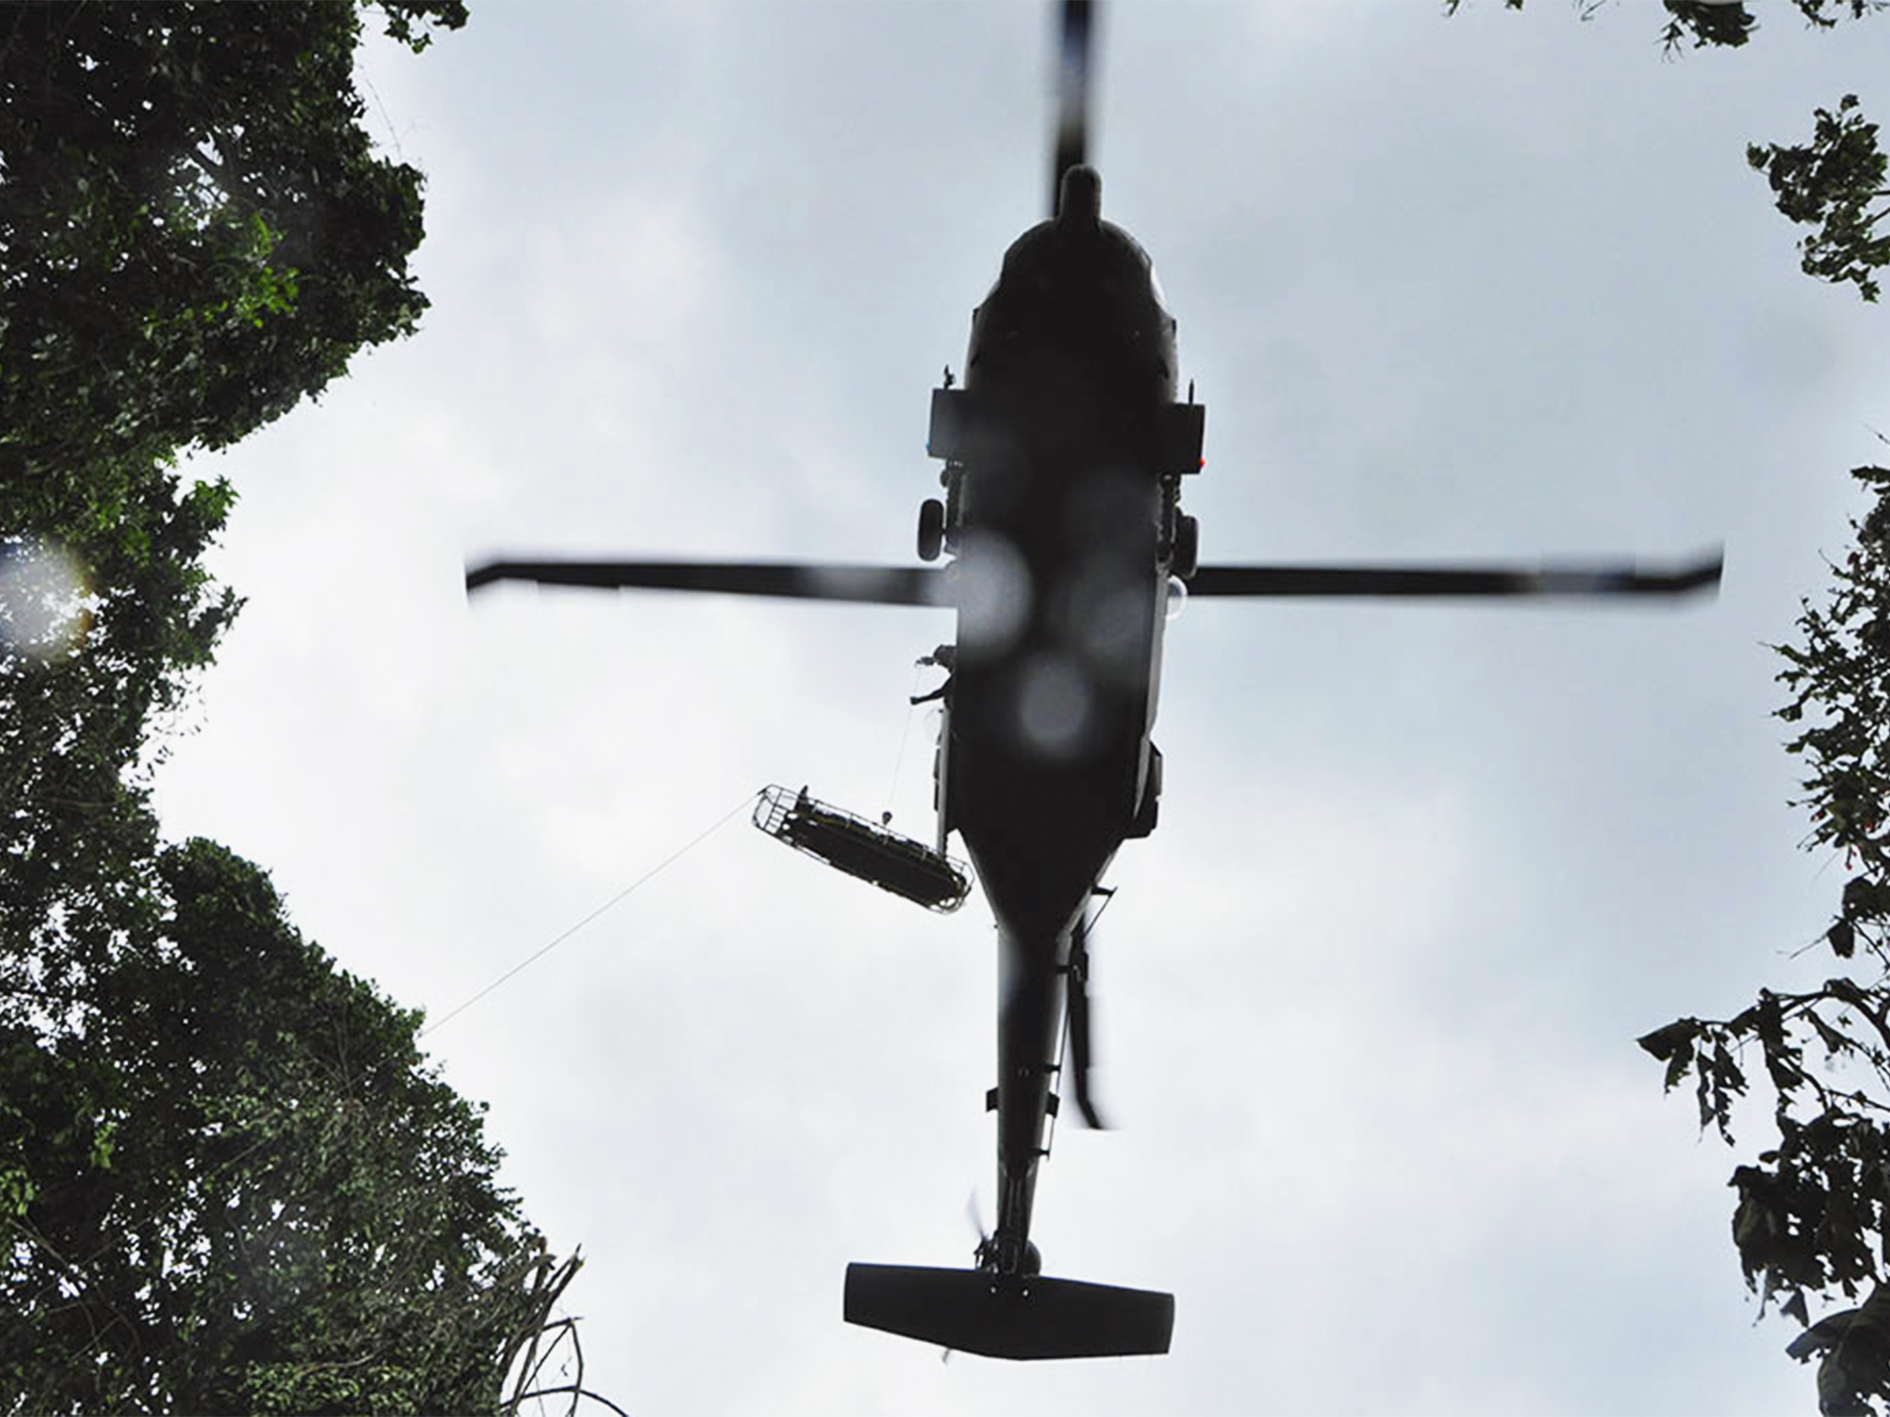 Operación de extracción en helicóptero UH-60L Ángel.